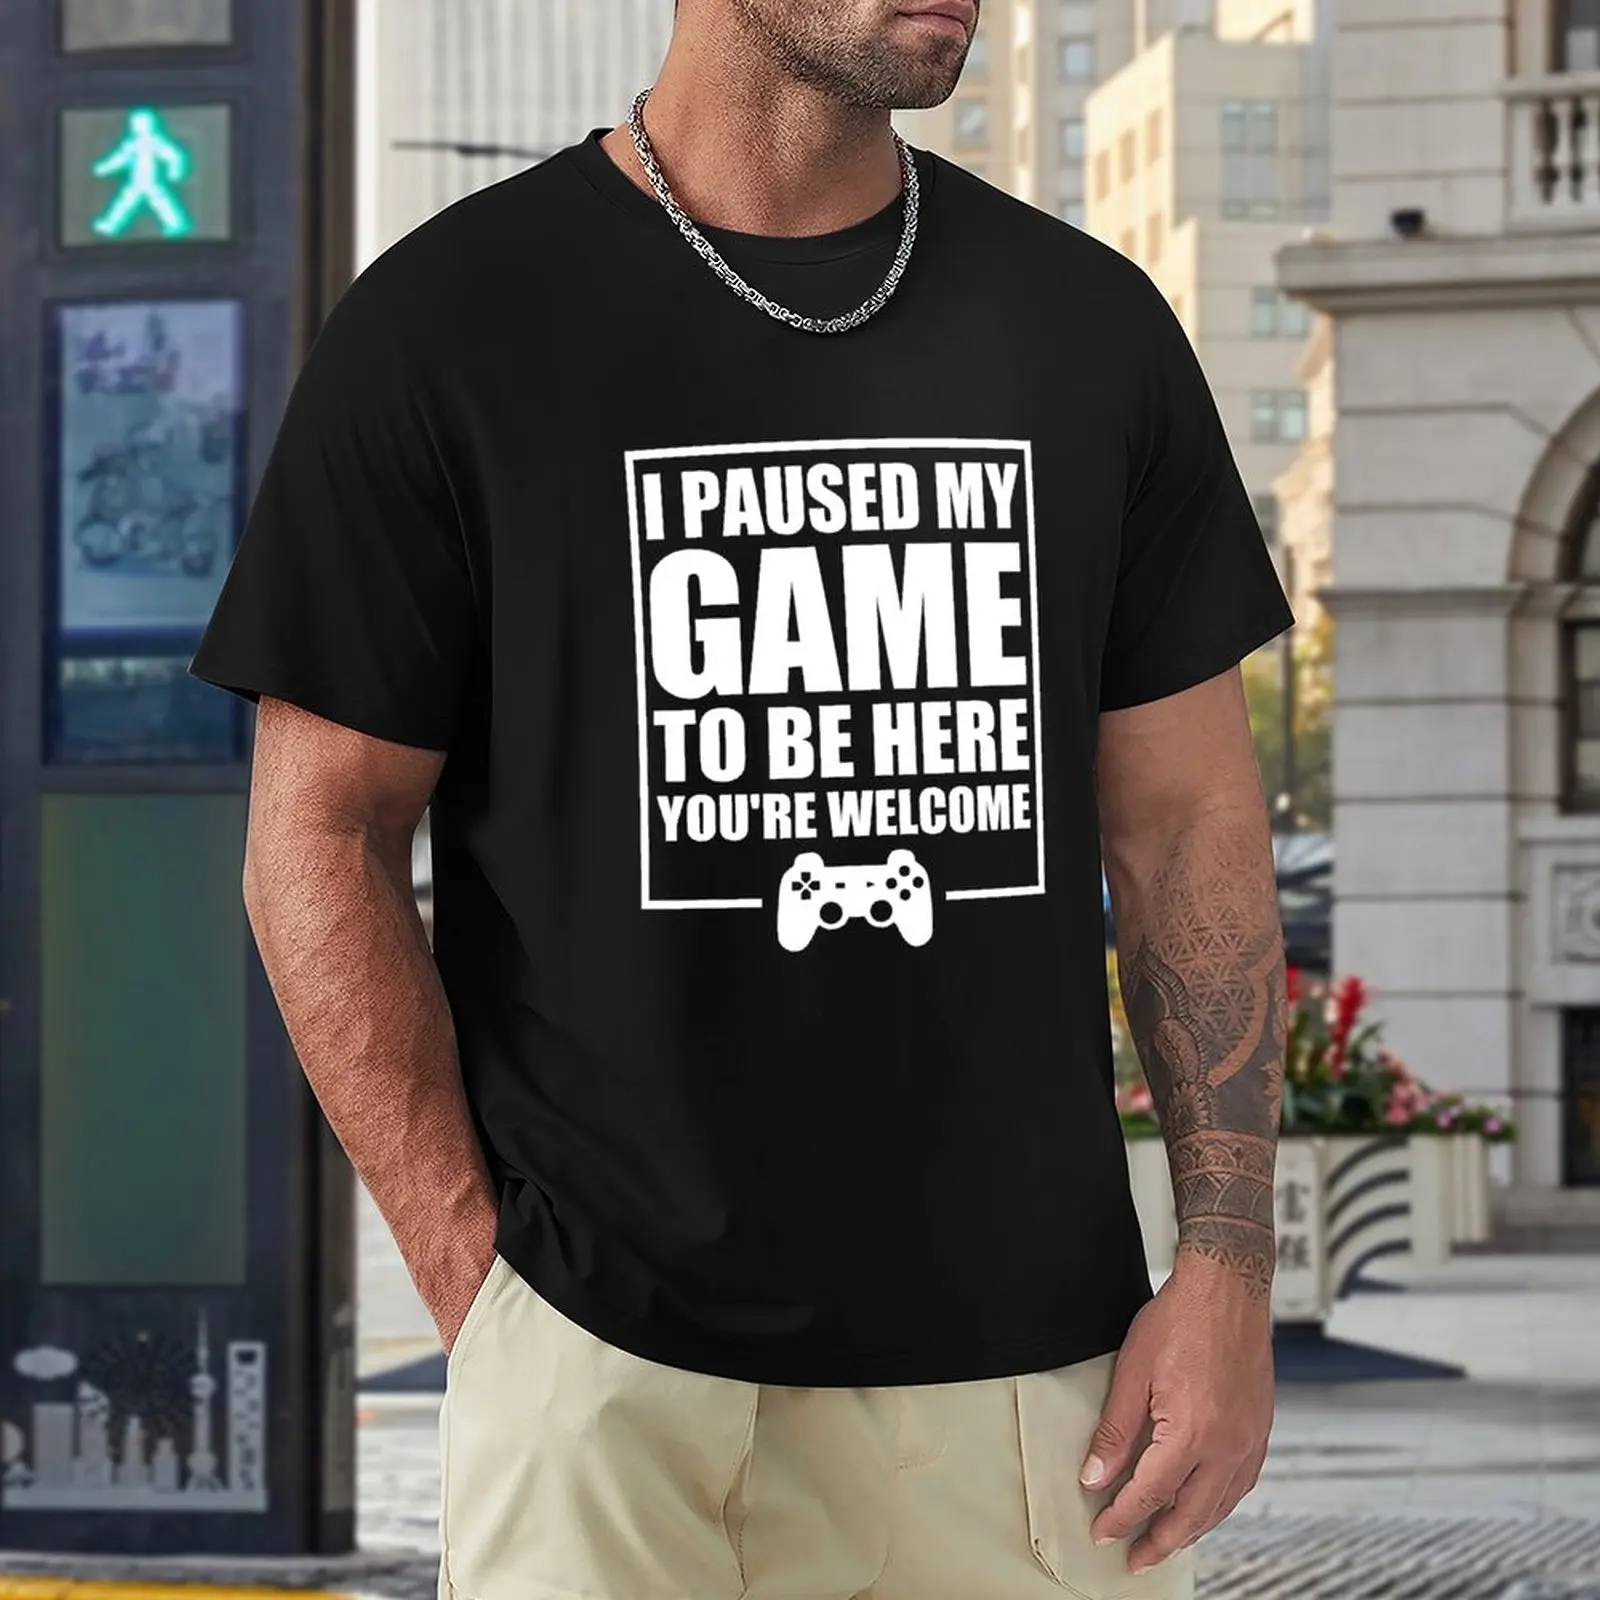 Camiseta 100% Algodão Masculino Plus Size Camisa Jogo Vídeo Game Eu Pausei  Meu Jogo Para Estar Aqui Envio Imediato - UseKero